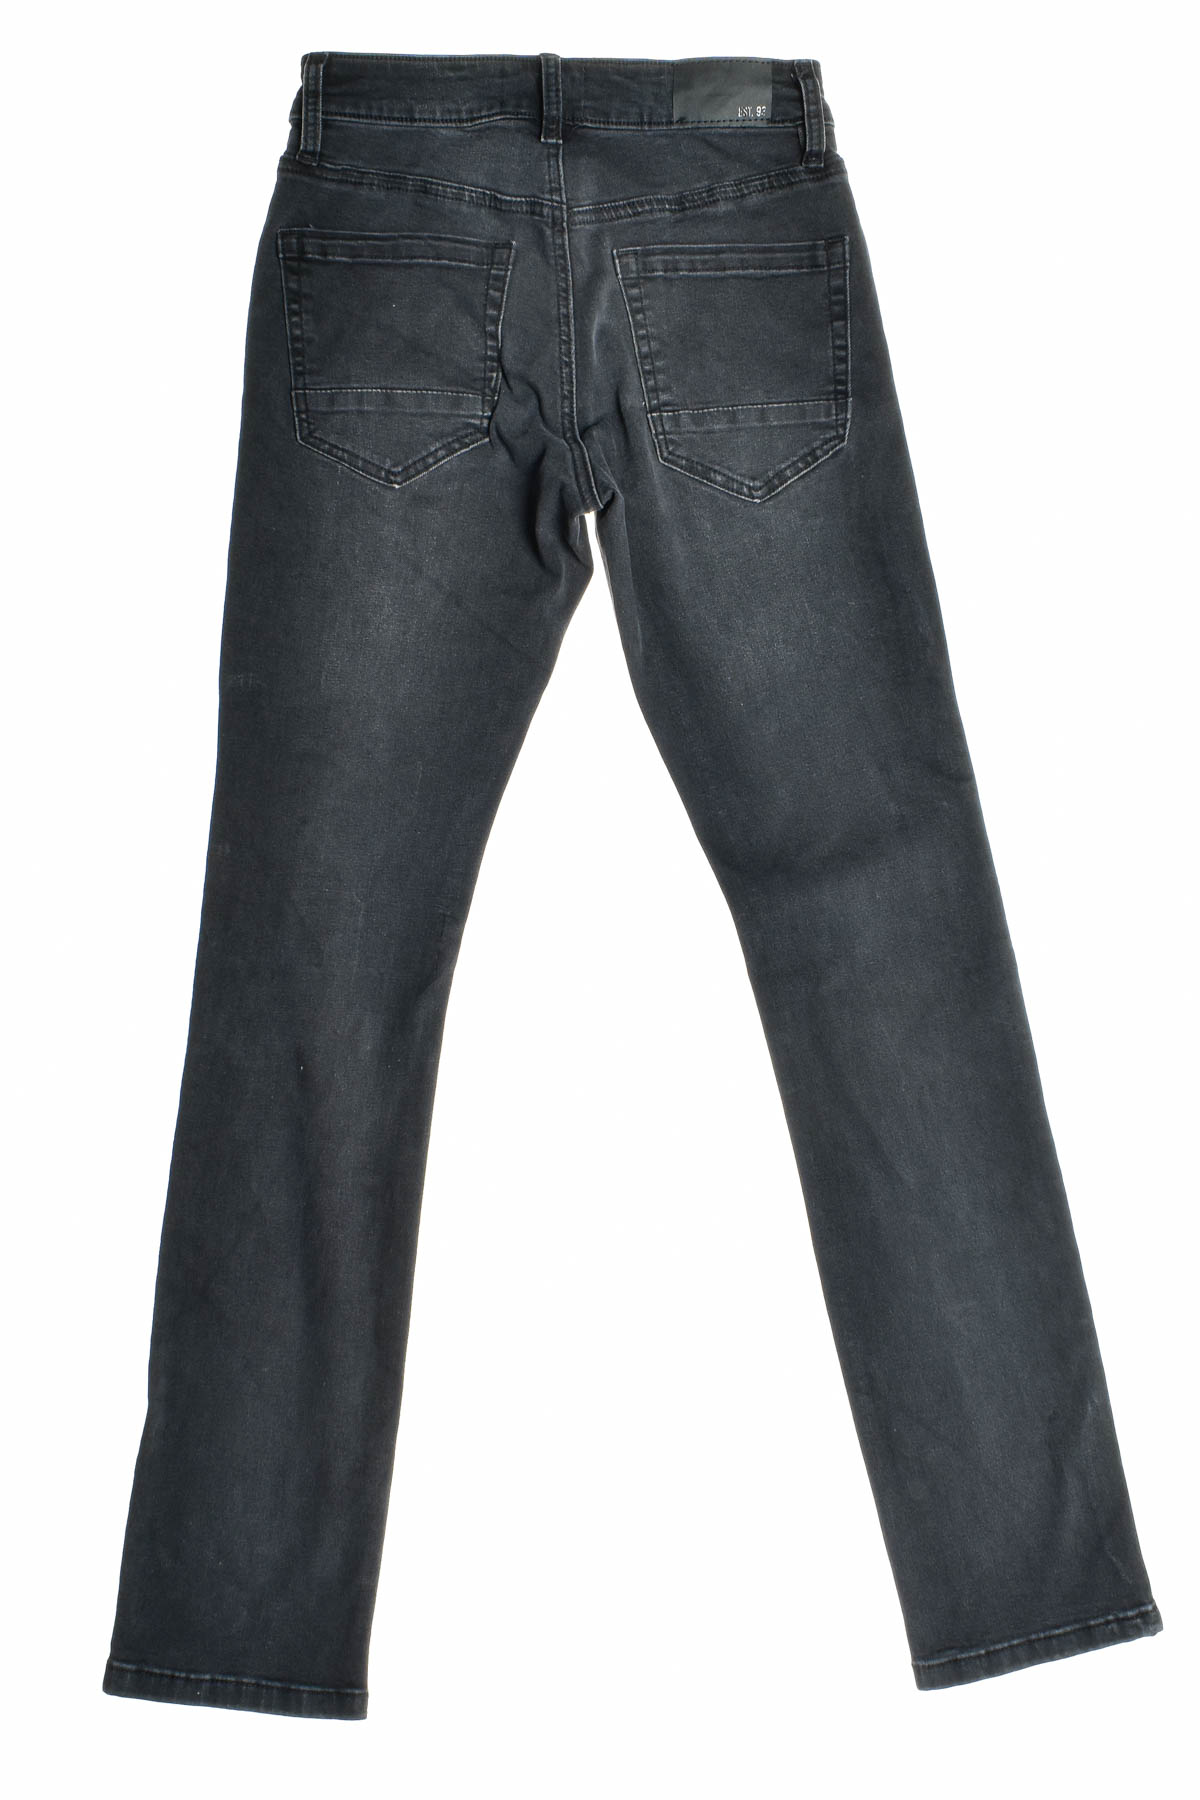 Jeans pentru bărbăți - Jay Jays - 1